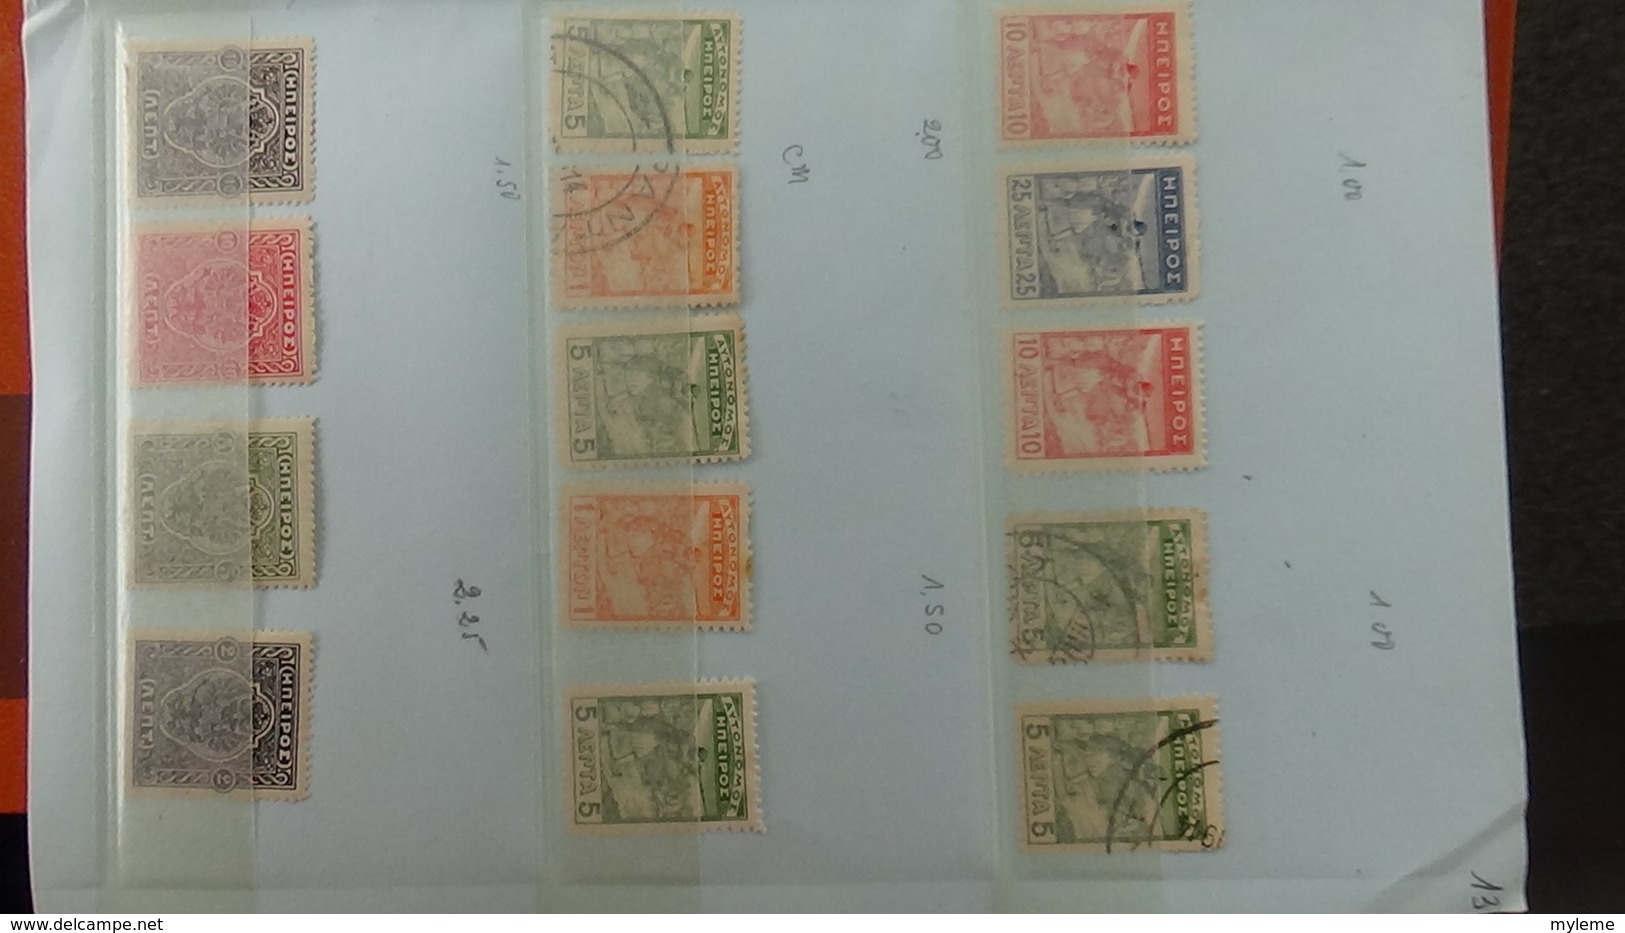 Carnet à choix de timbres de TOUVA (Russie). Pas commun !!!